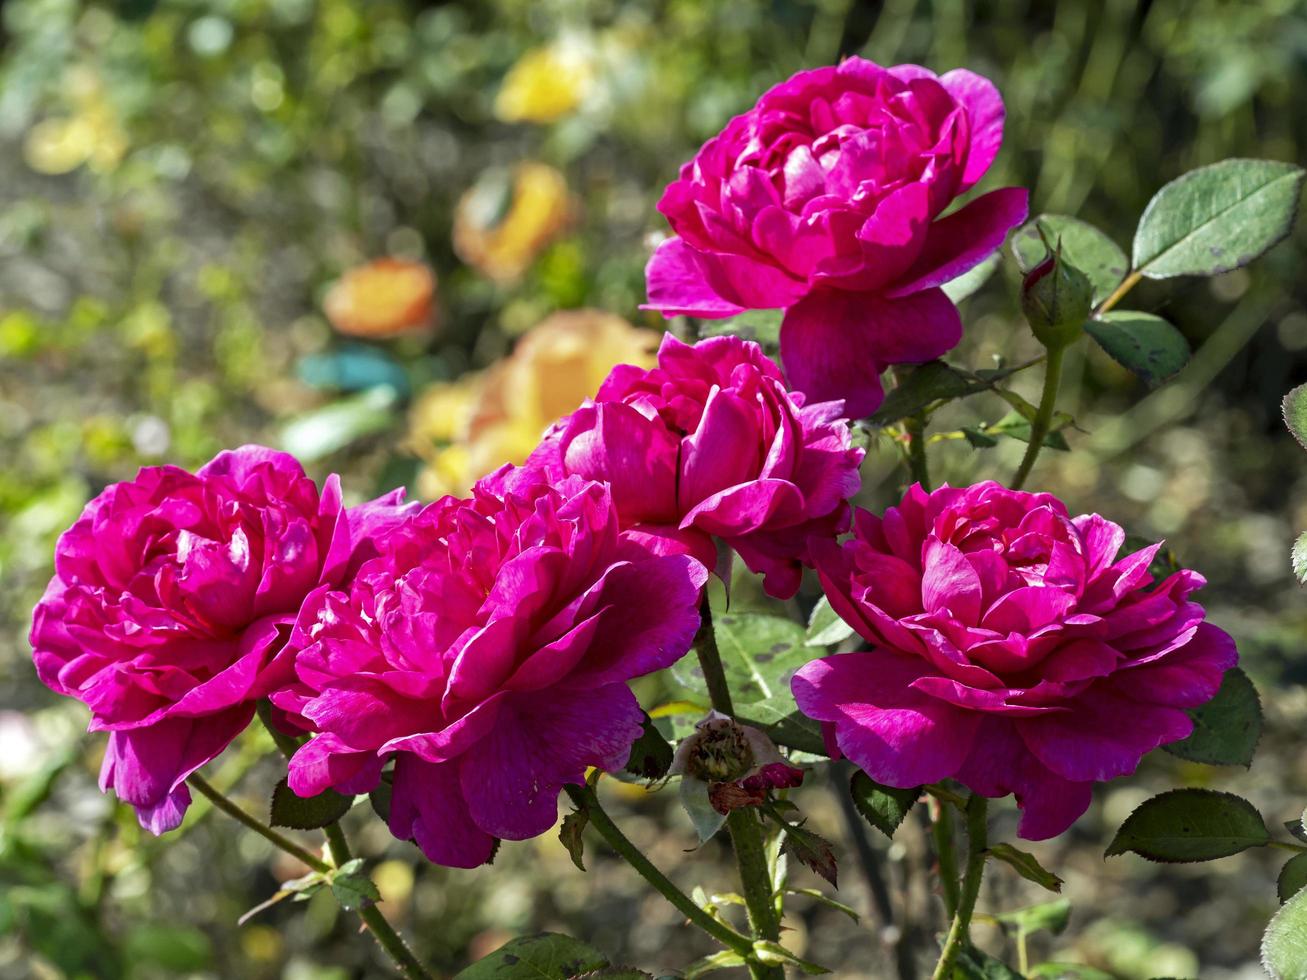 hermosas rosas de color rosa oscuro variedad noble anthony foto